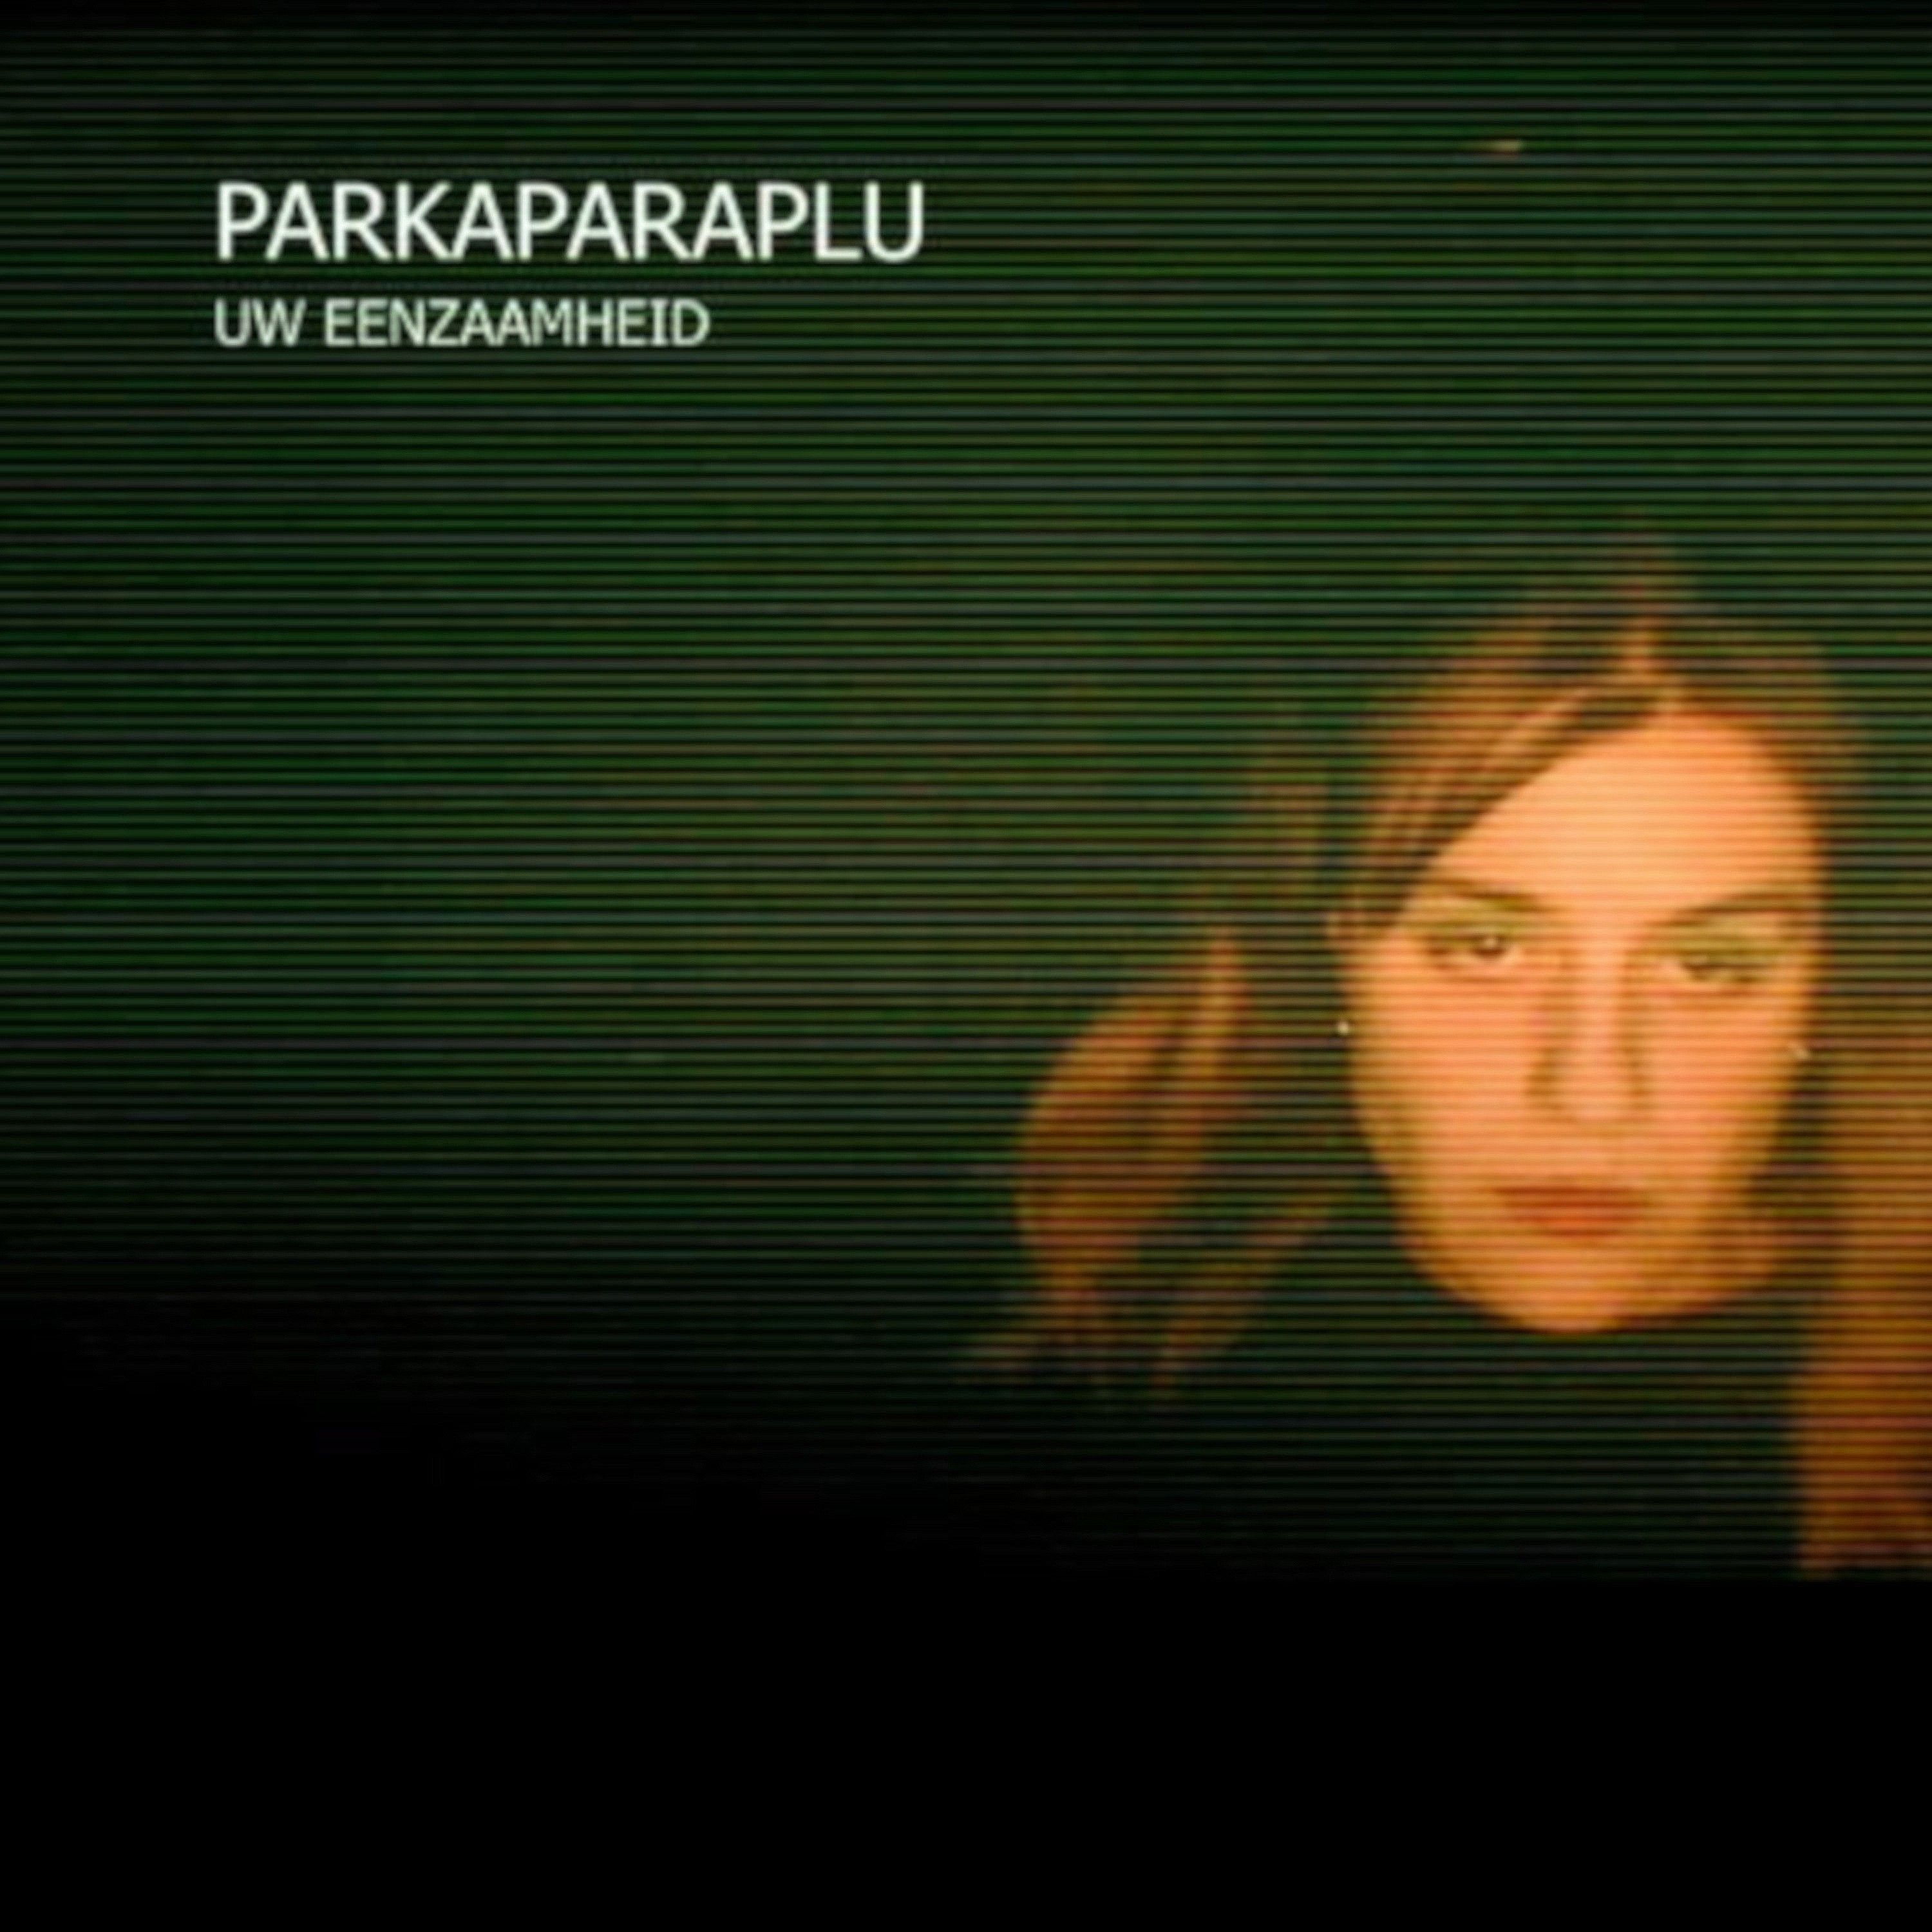 Parkaparaplu - Uw eenzaamheid front cover